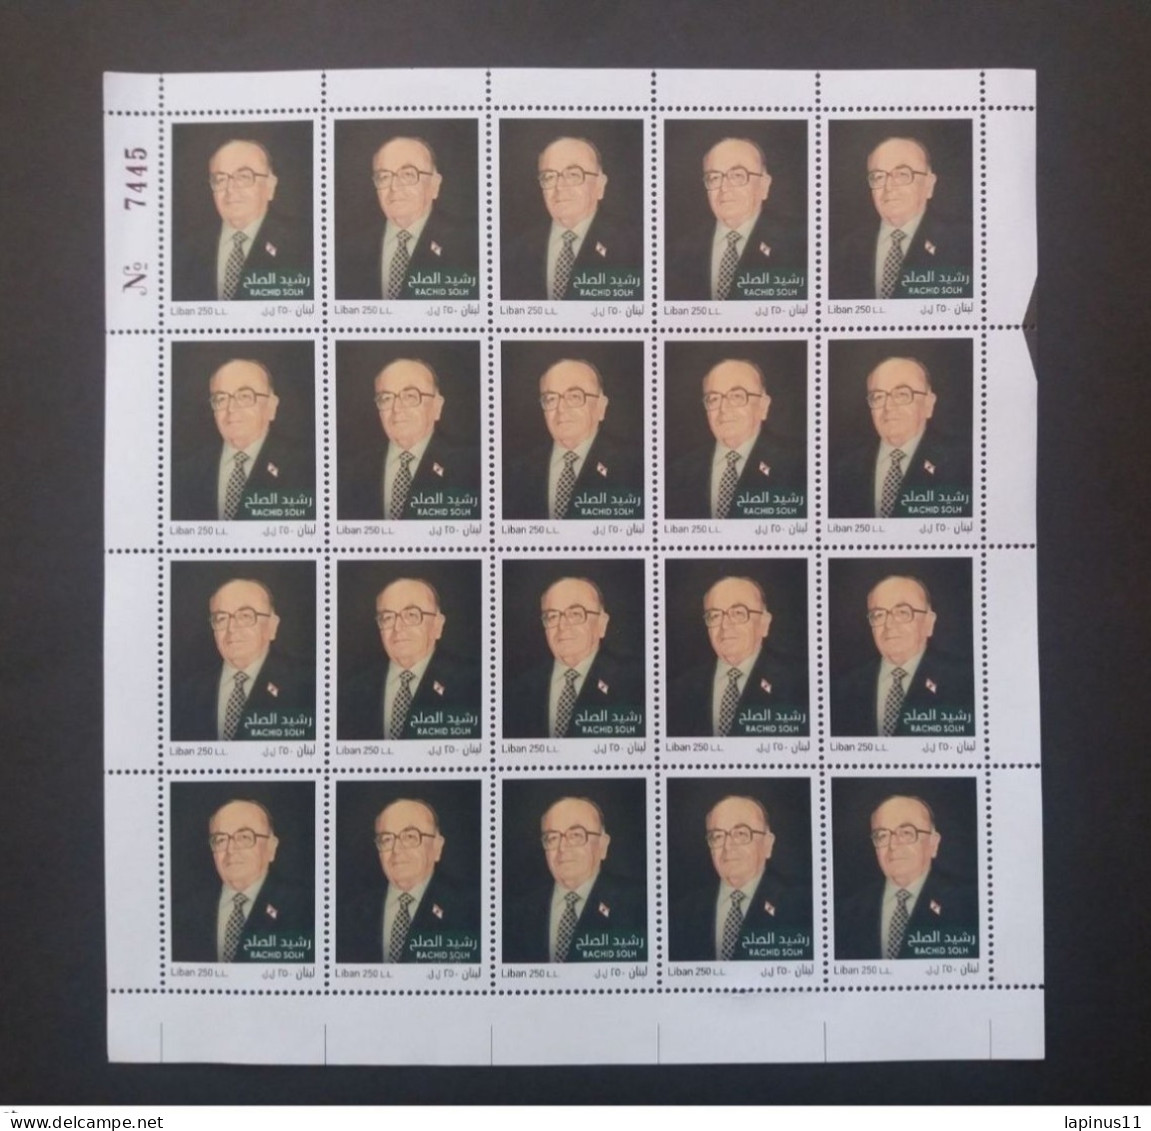 LIBAN لبنان LEBANON 2018 Rachid Solh, 1926-2014 Stamps Full Sheet MNH - Lebanon